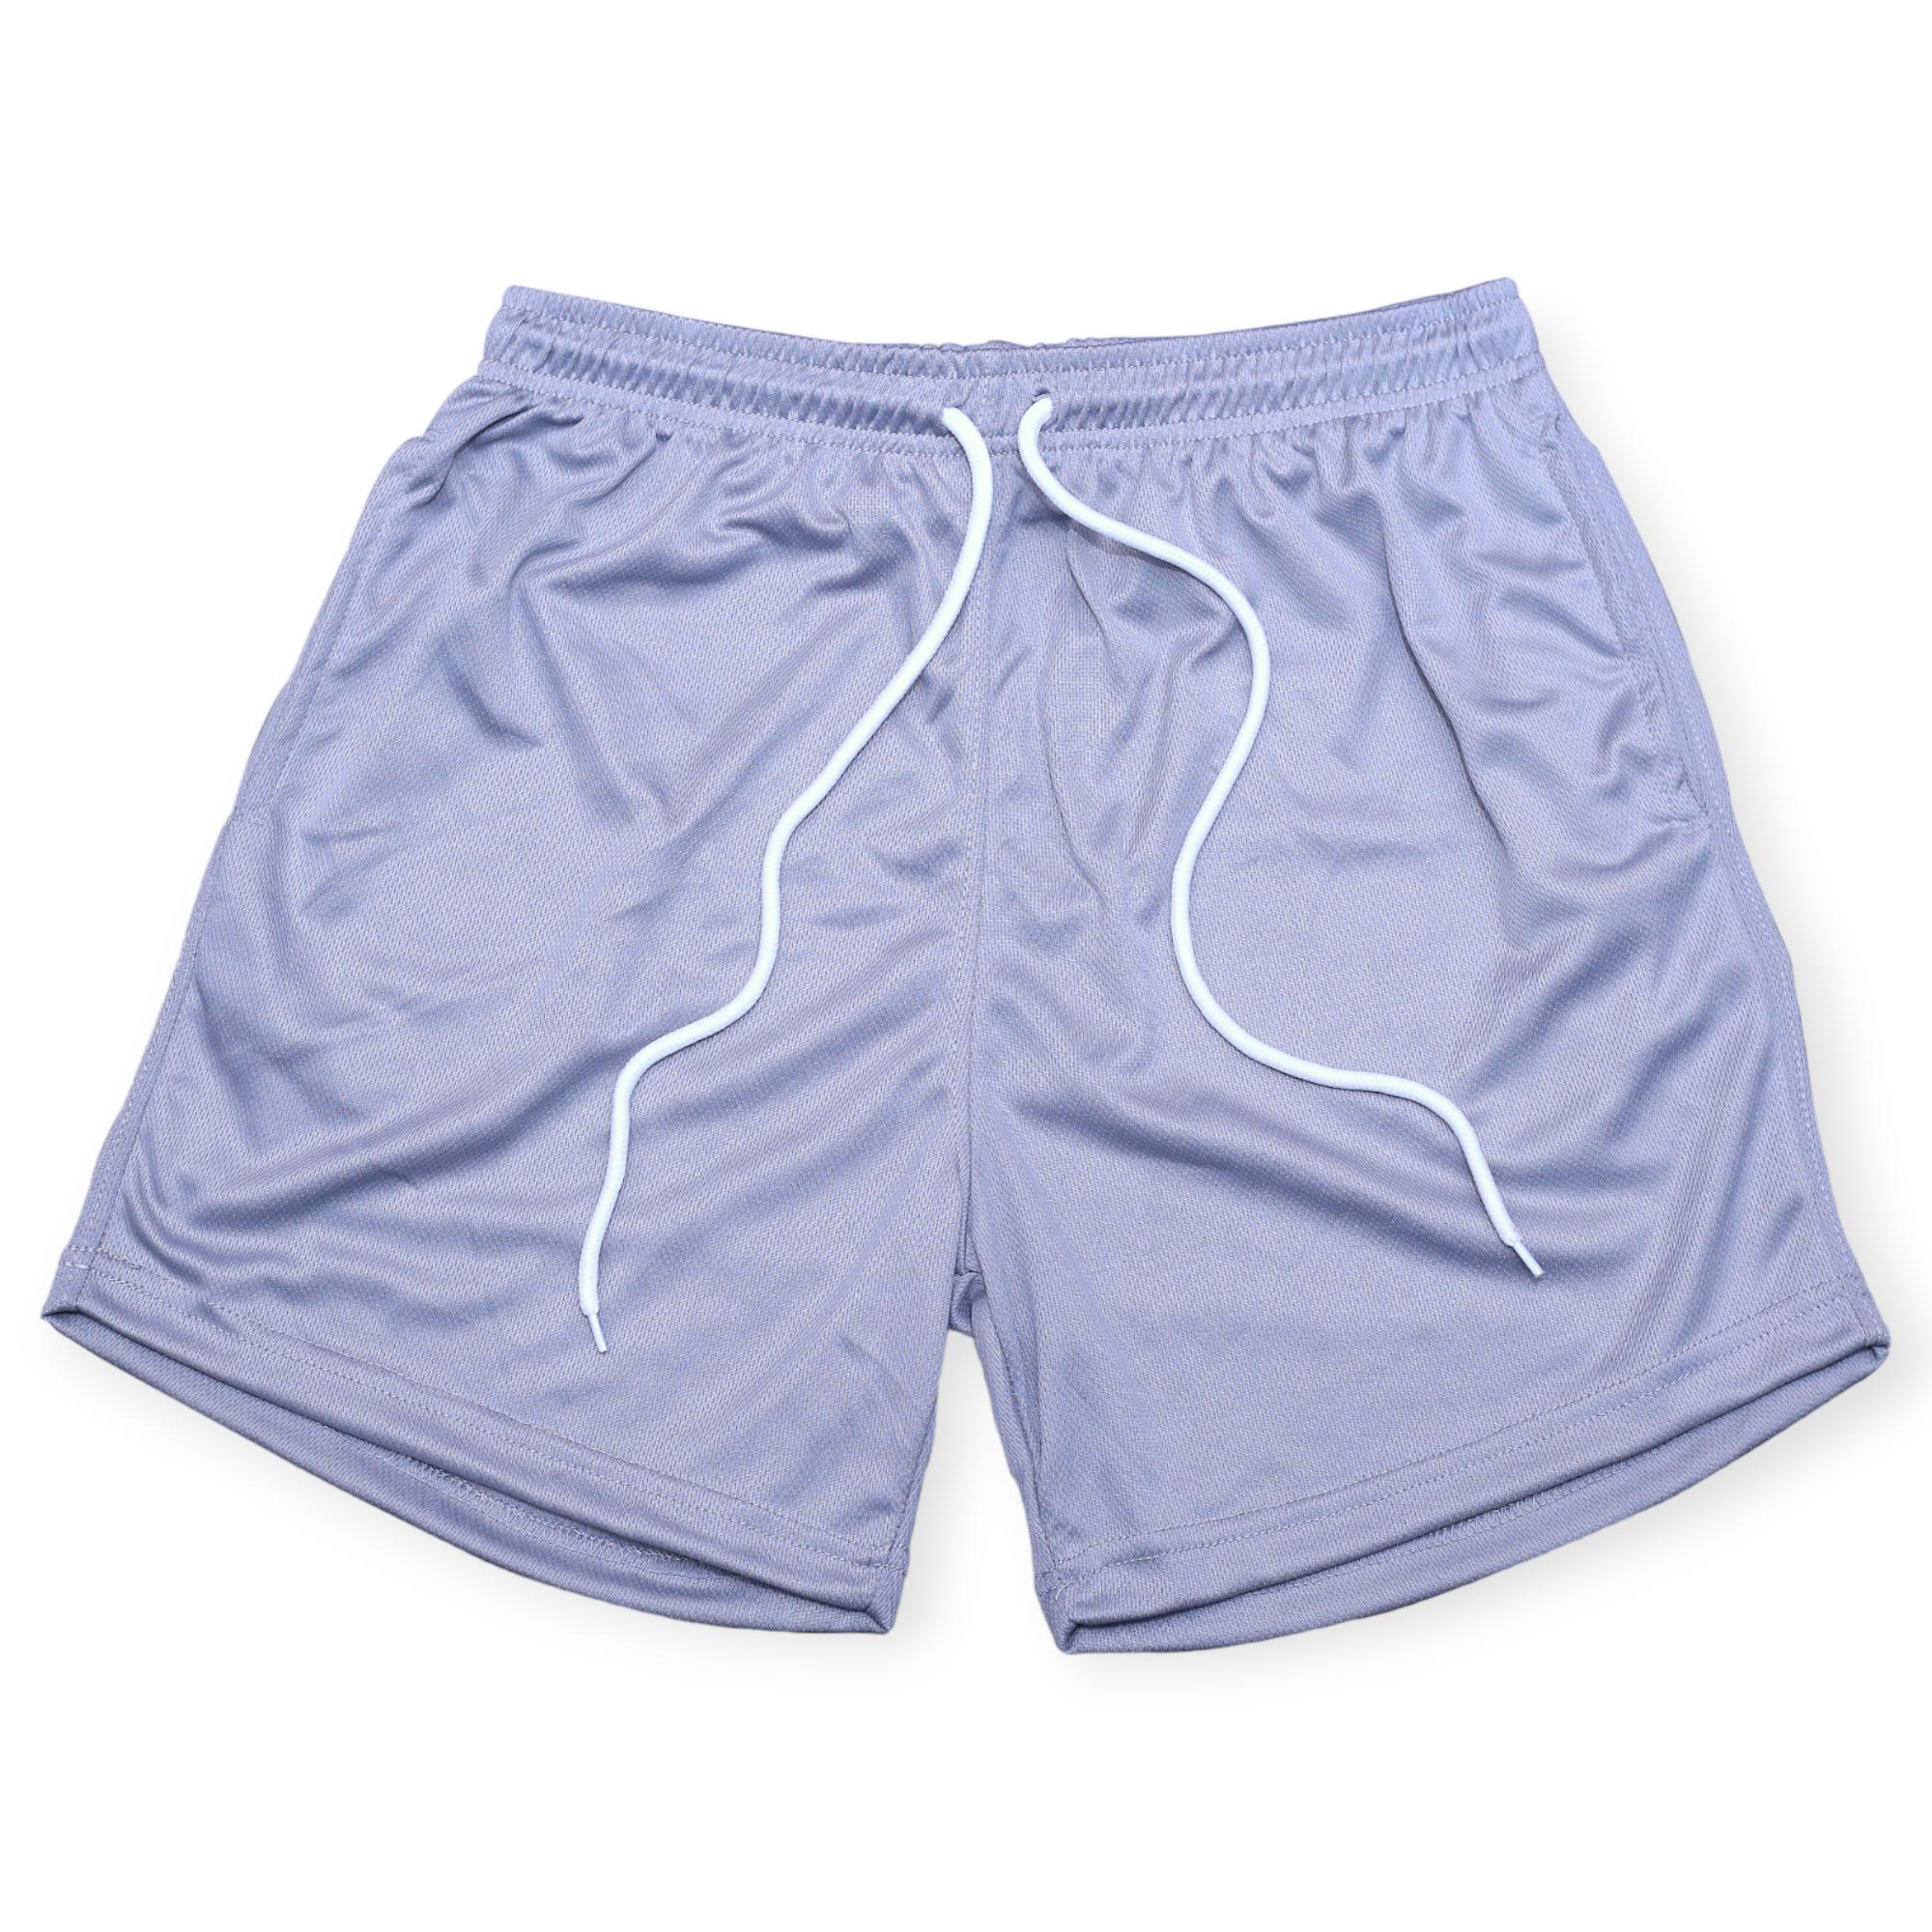 Nexus Clothing Men Basic Solid Mesh Breathable Mesh Shorts (Heather Grey)-Heather Grey-XXX-Large-Nexus Clothing